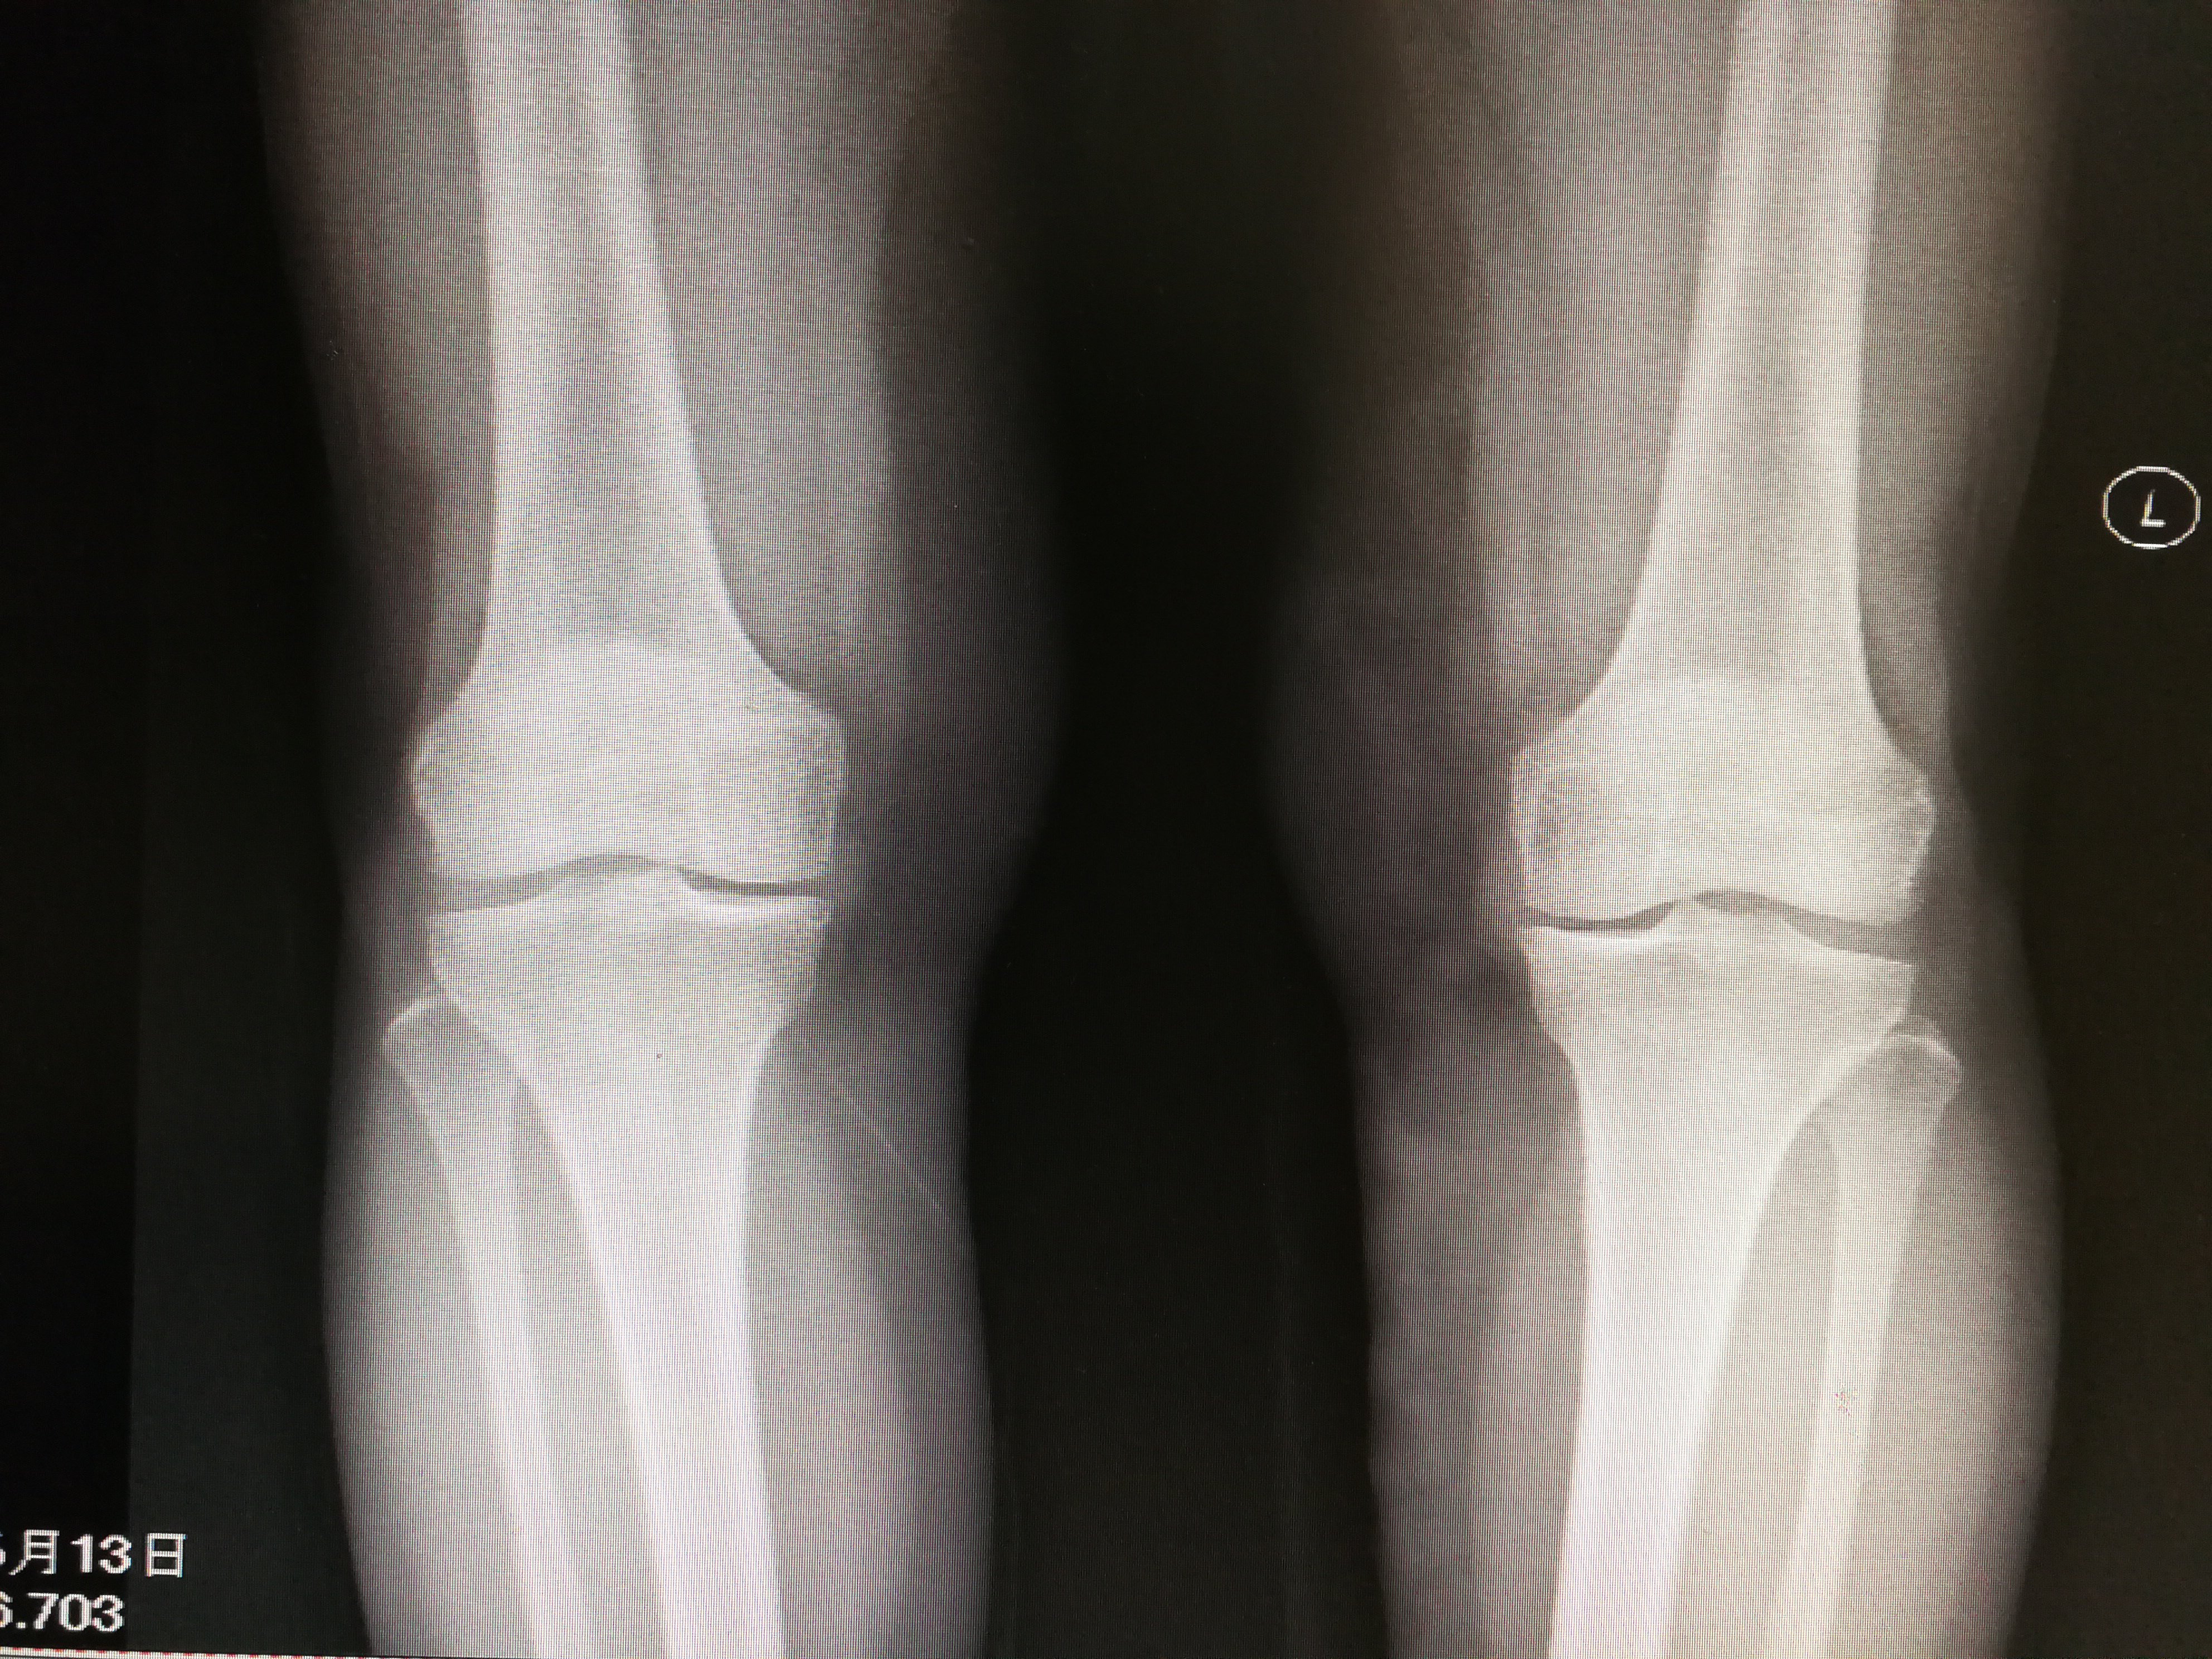 部分膝关节置换:双侧同期单髁置换术治疗双膝骨关节炎 